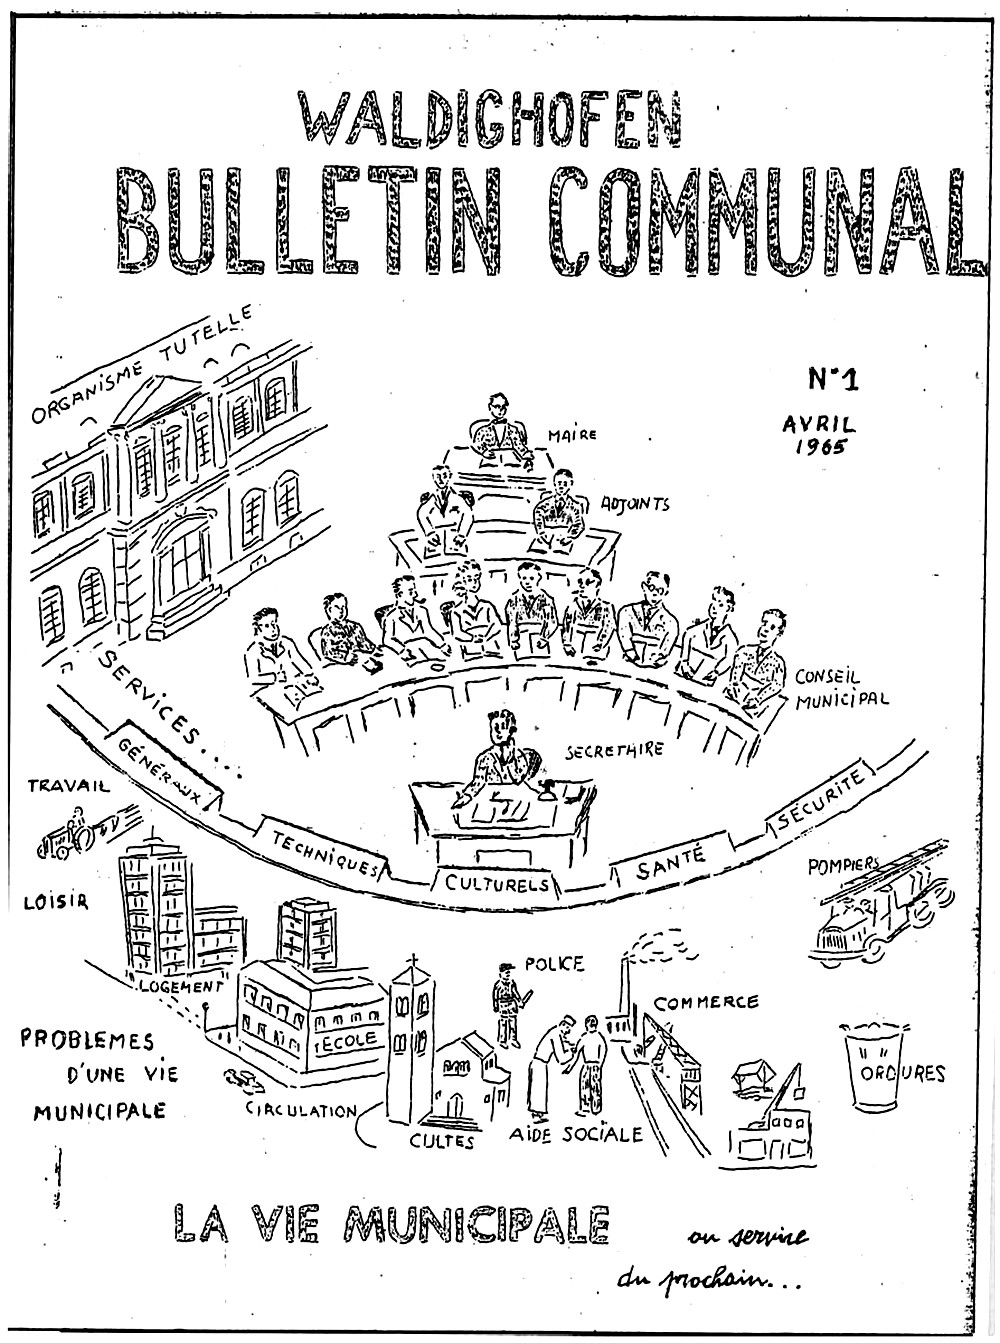 1er bulletin communal de WALDIGHOFFEN - Avril 1965